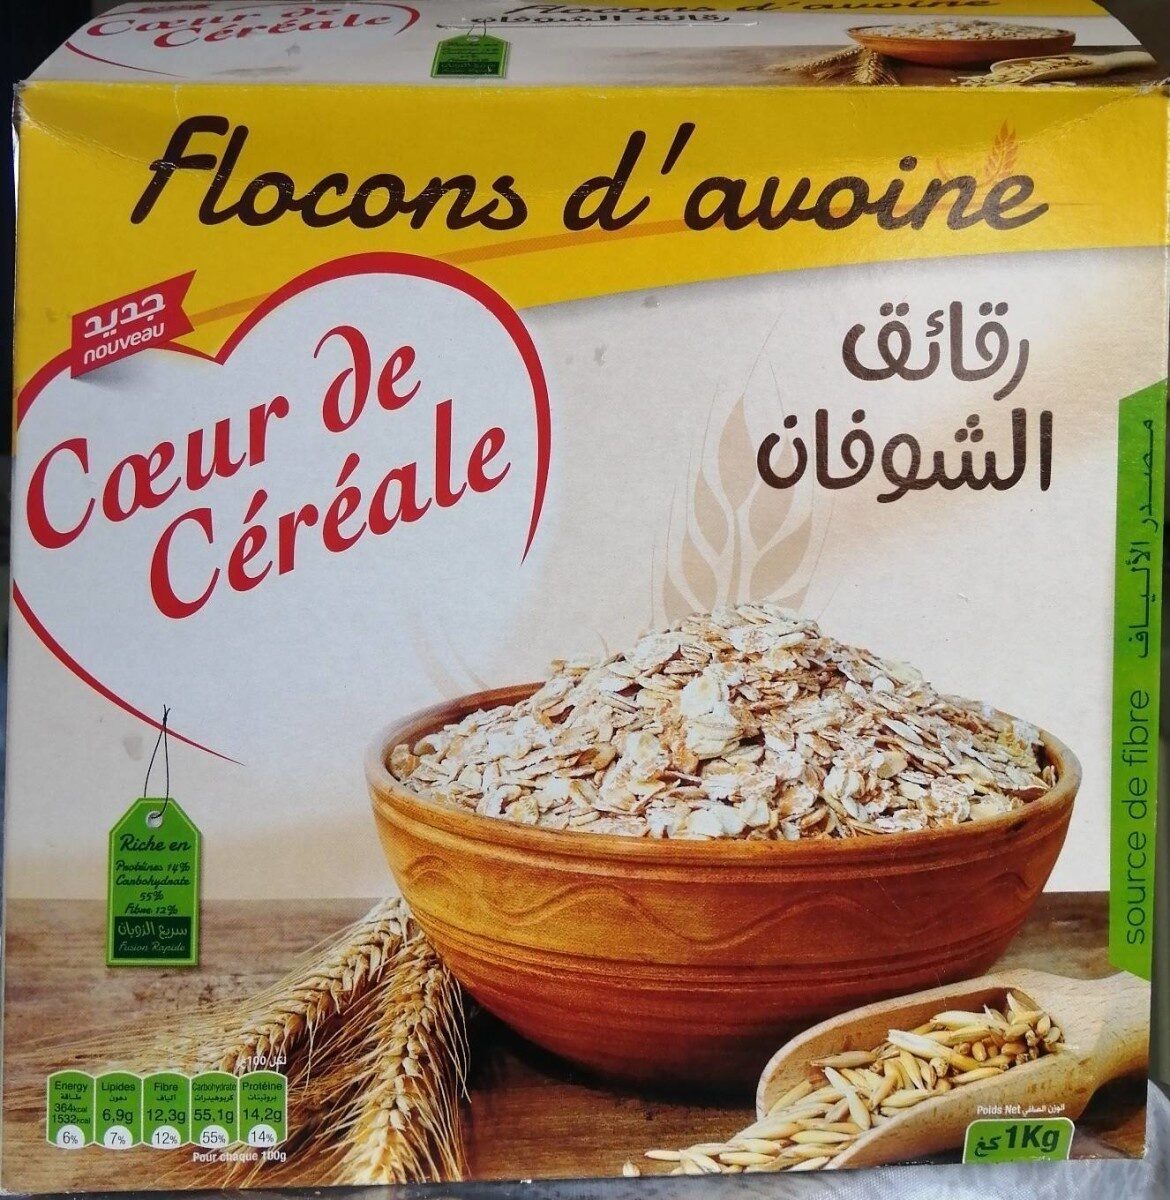 Flocons d'avoine Cœur de Céréales - Product - fr